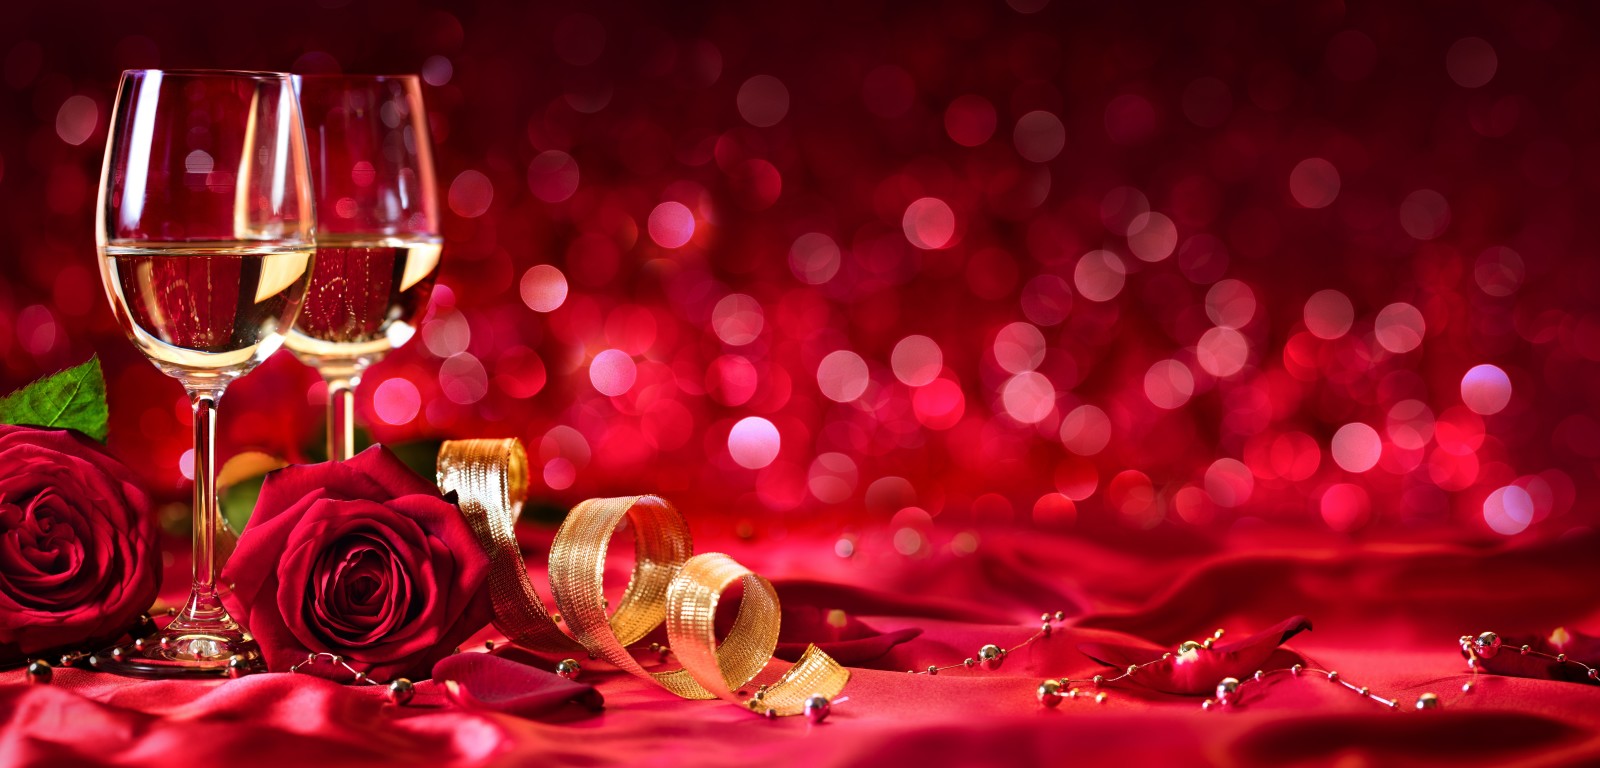 バレンタイン・デー, バラ, テープ, ワイン, 眼鏡, 花びら, シャンパン, つぼみ